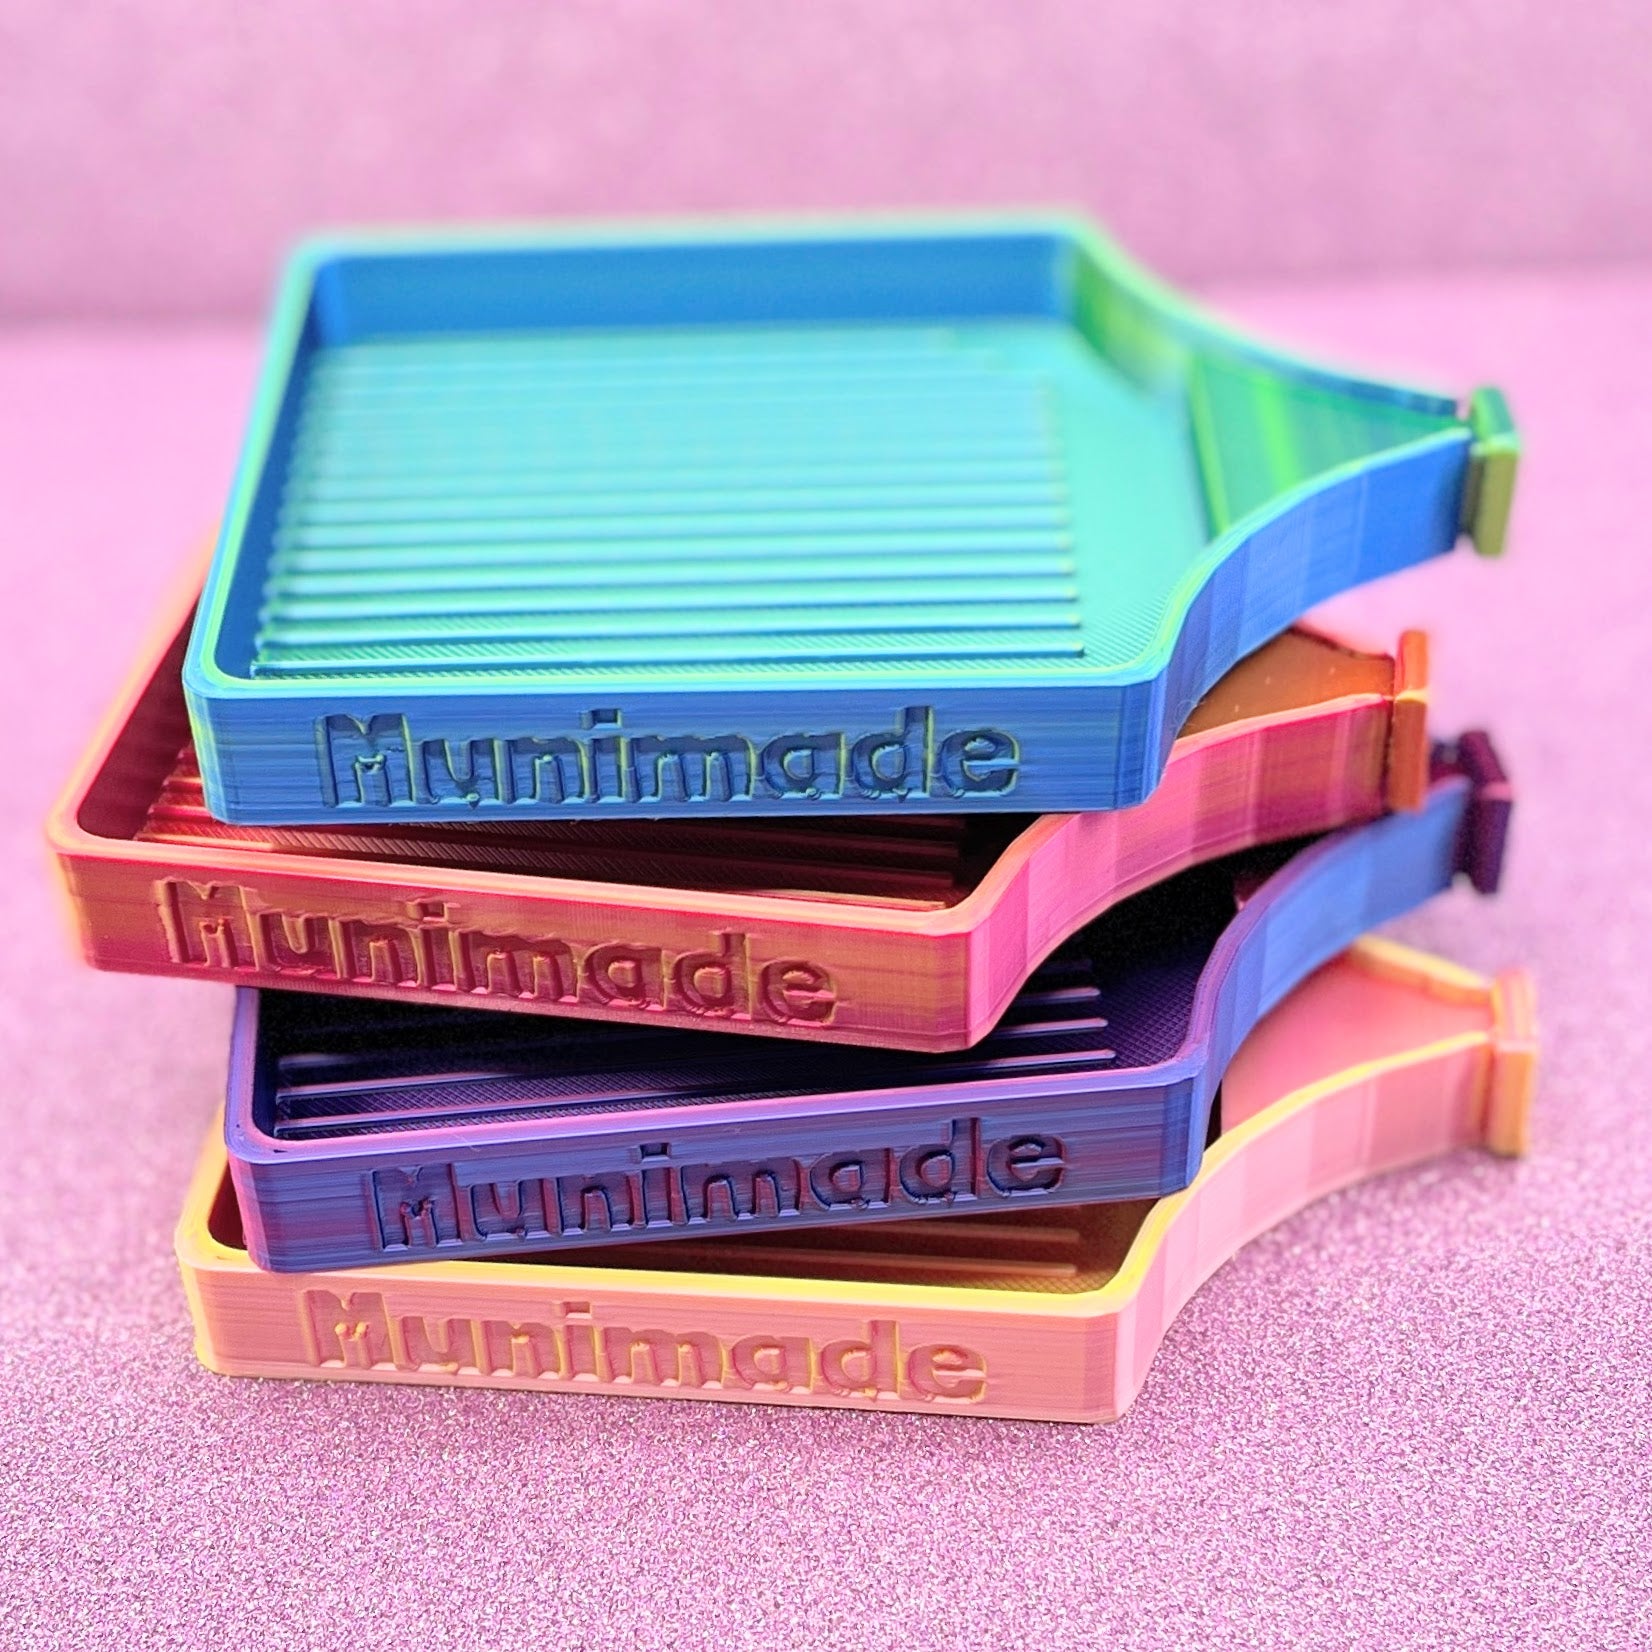 High Quality 3D Printed Diamond Tray (Multi Colors) –  DiamondPaintersAnonymous